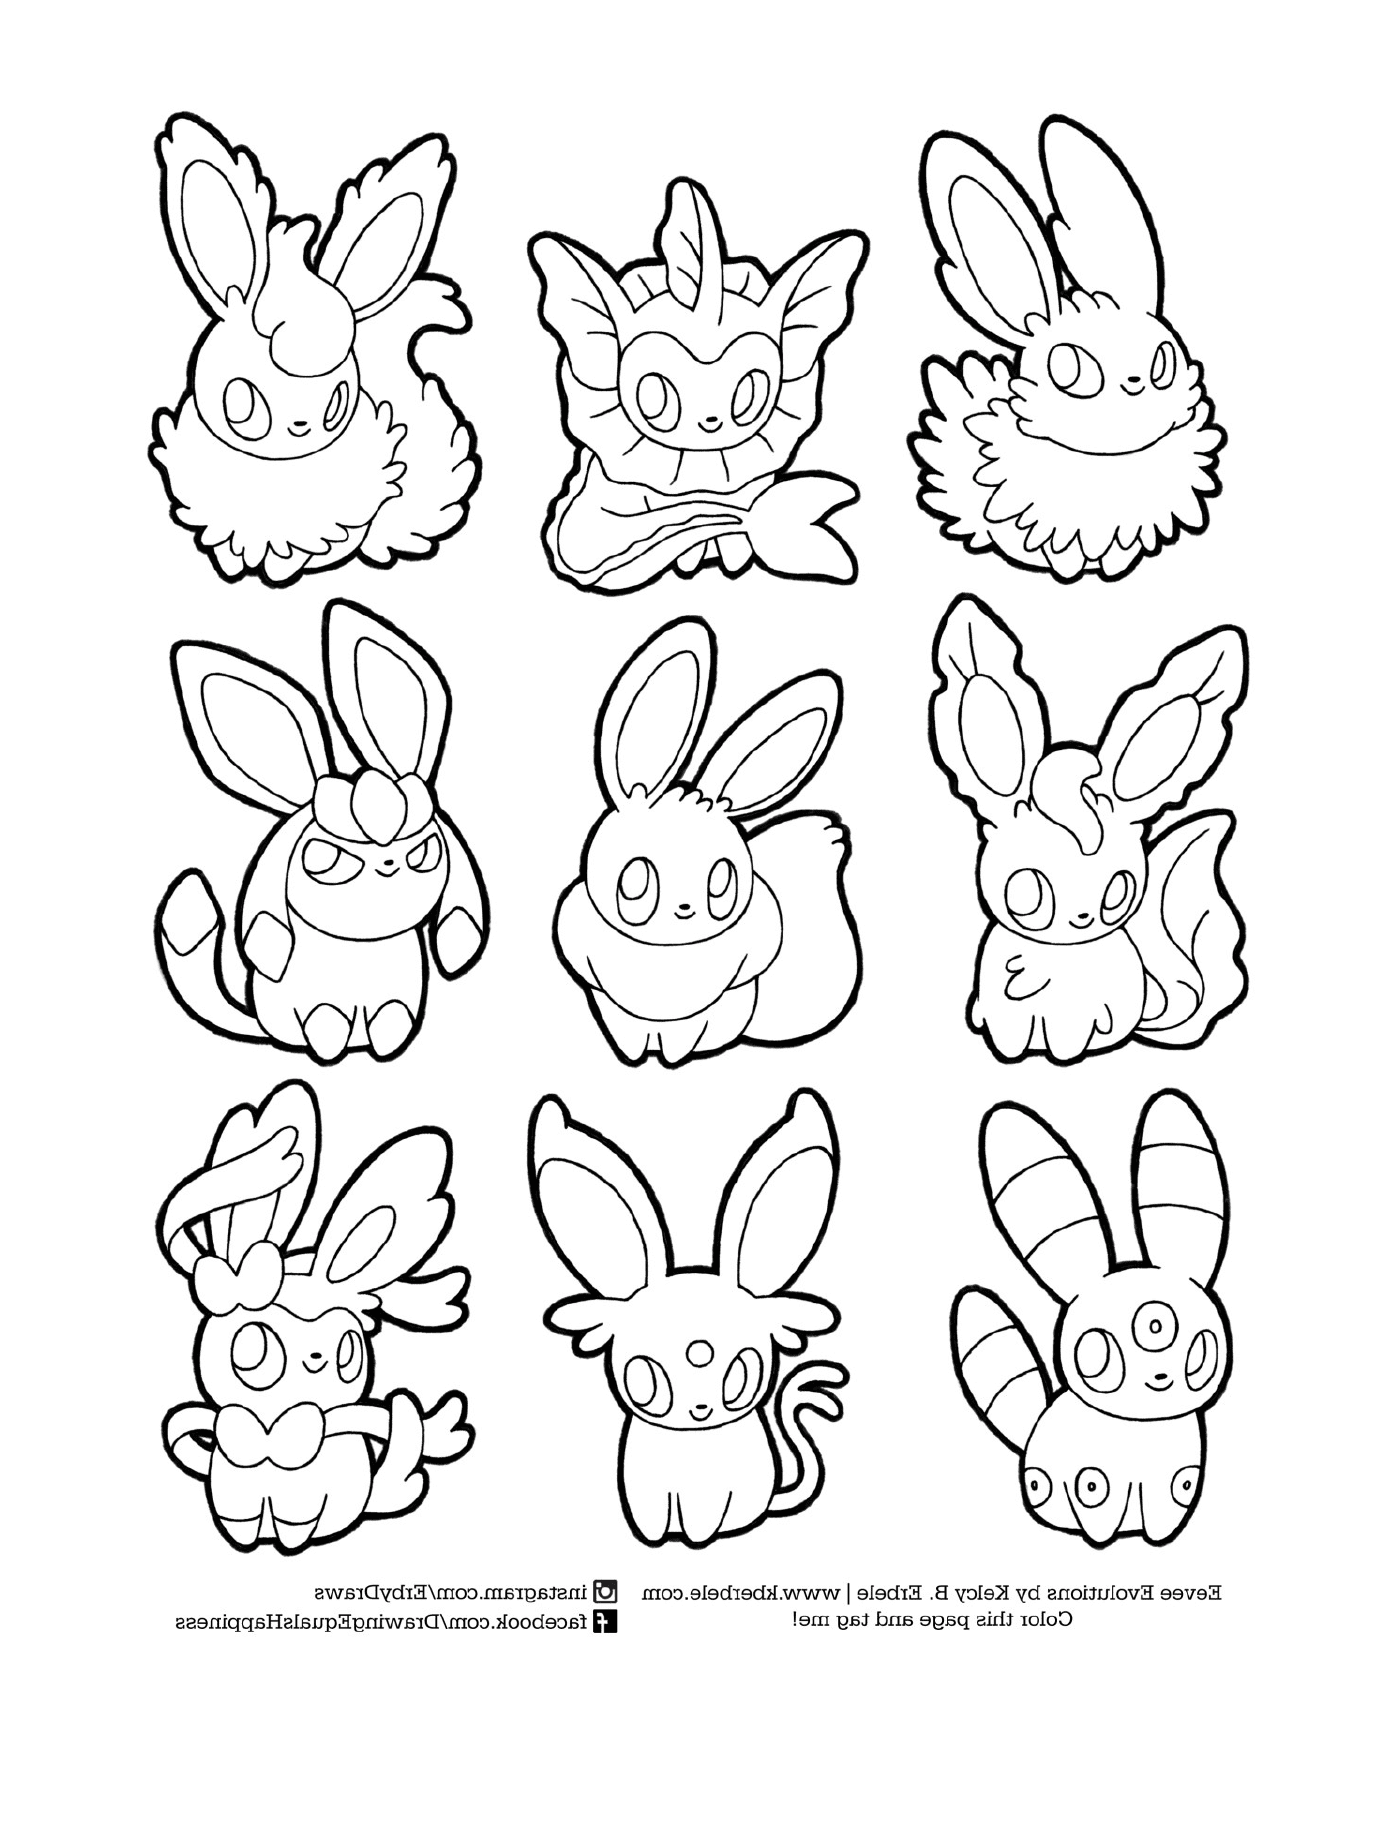  Эволюция Эволи, набор из девяти мультфильмов кроликов 